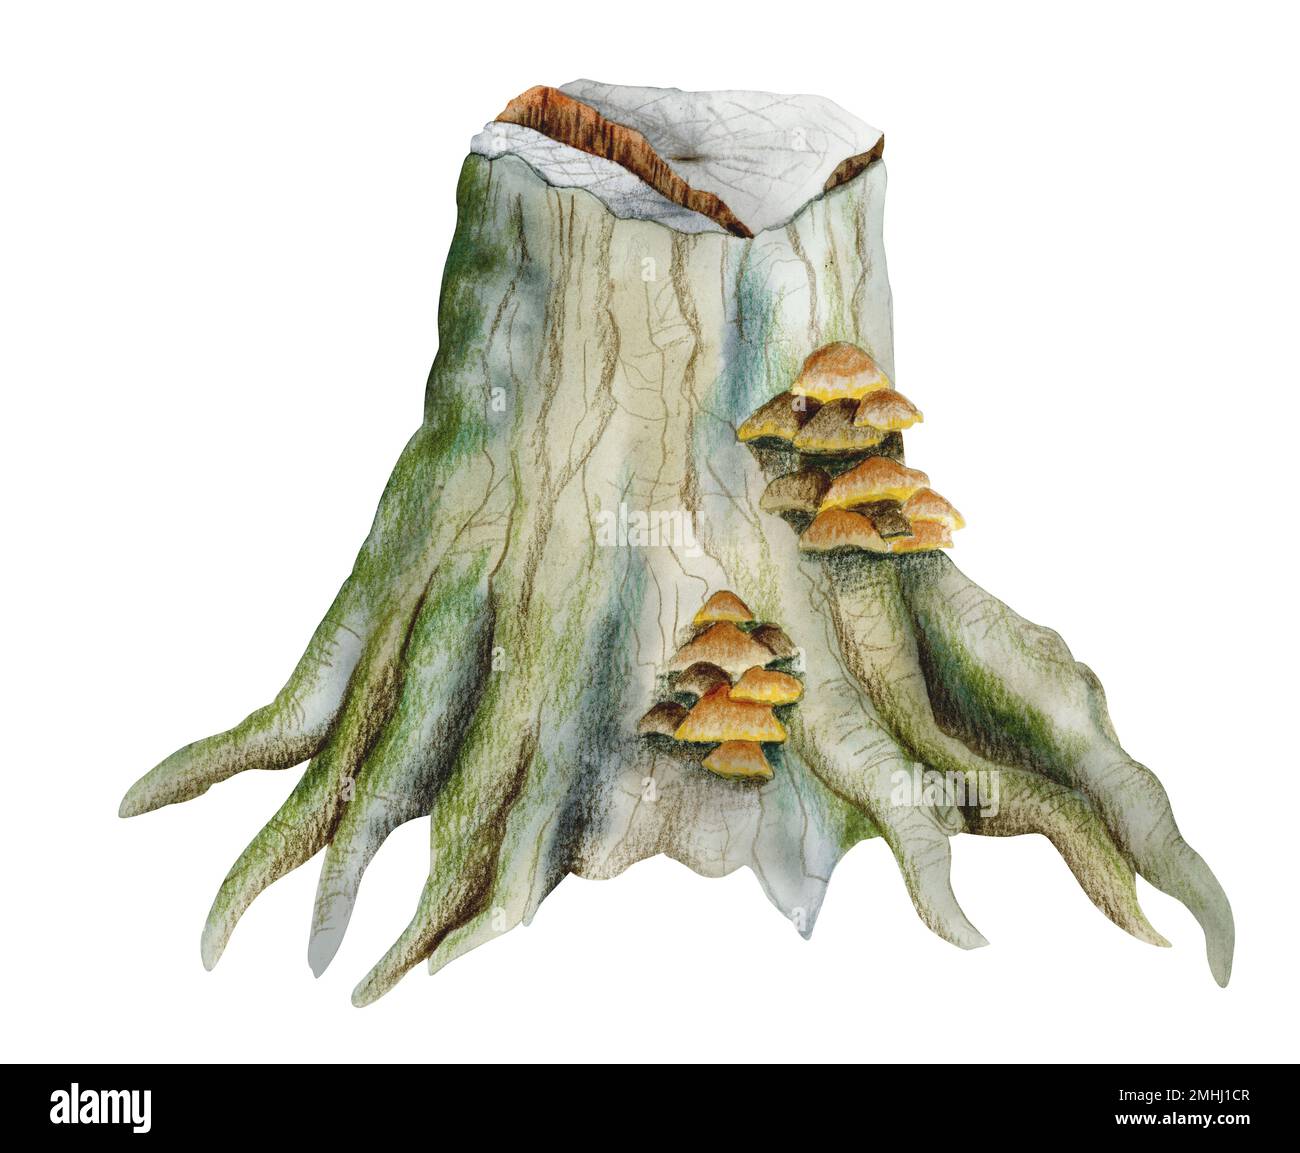 Ceppo di foresta con muschio e funghi. Rappresentazione realistica dell'acquerello nei colori verde e marrone isolato su sfondo bianco Foto Stock